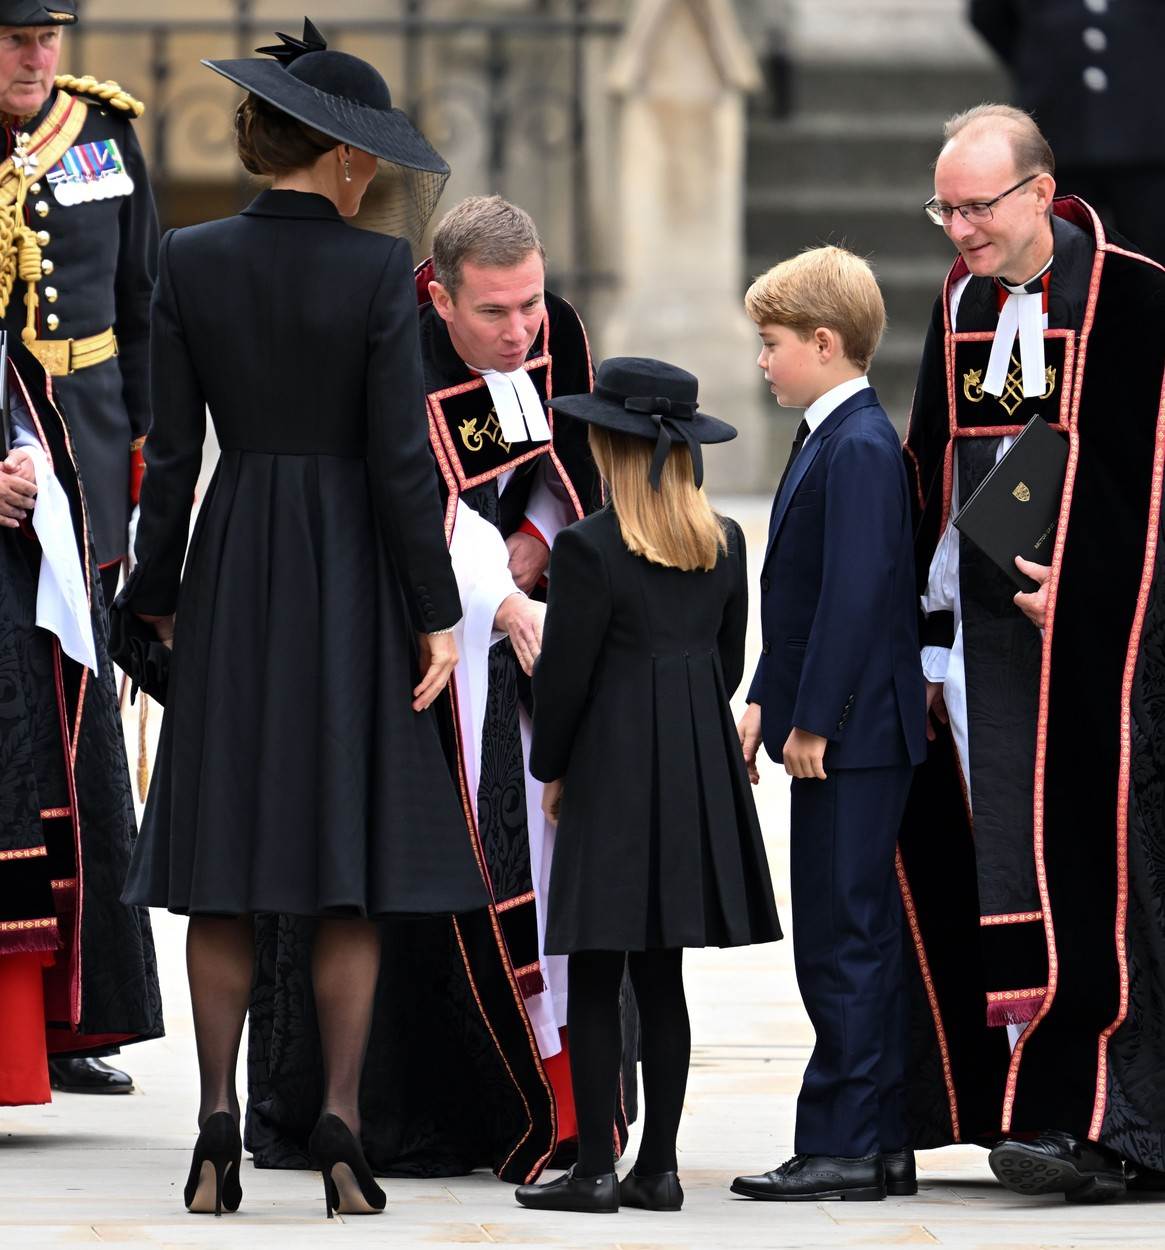 Princeza Charlotte prvi put je nosila šešir na javno događanje